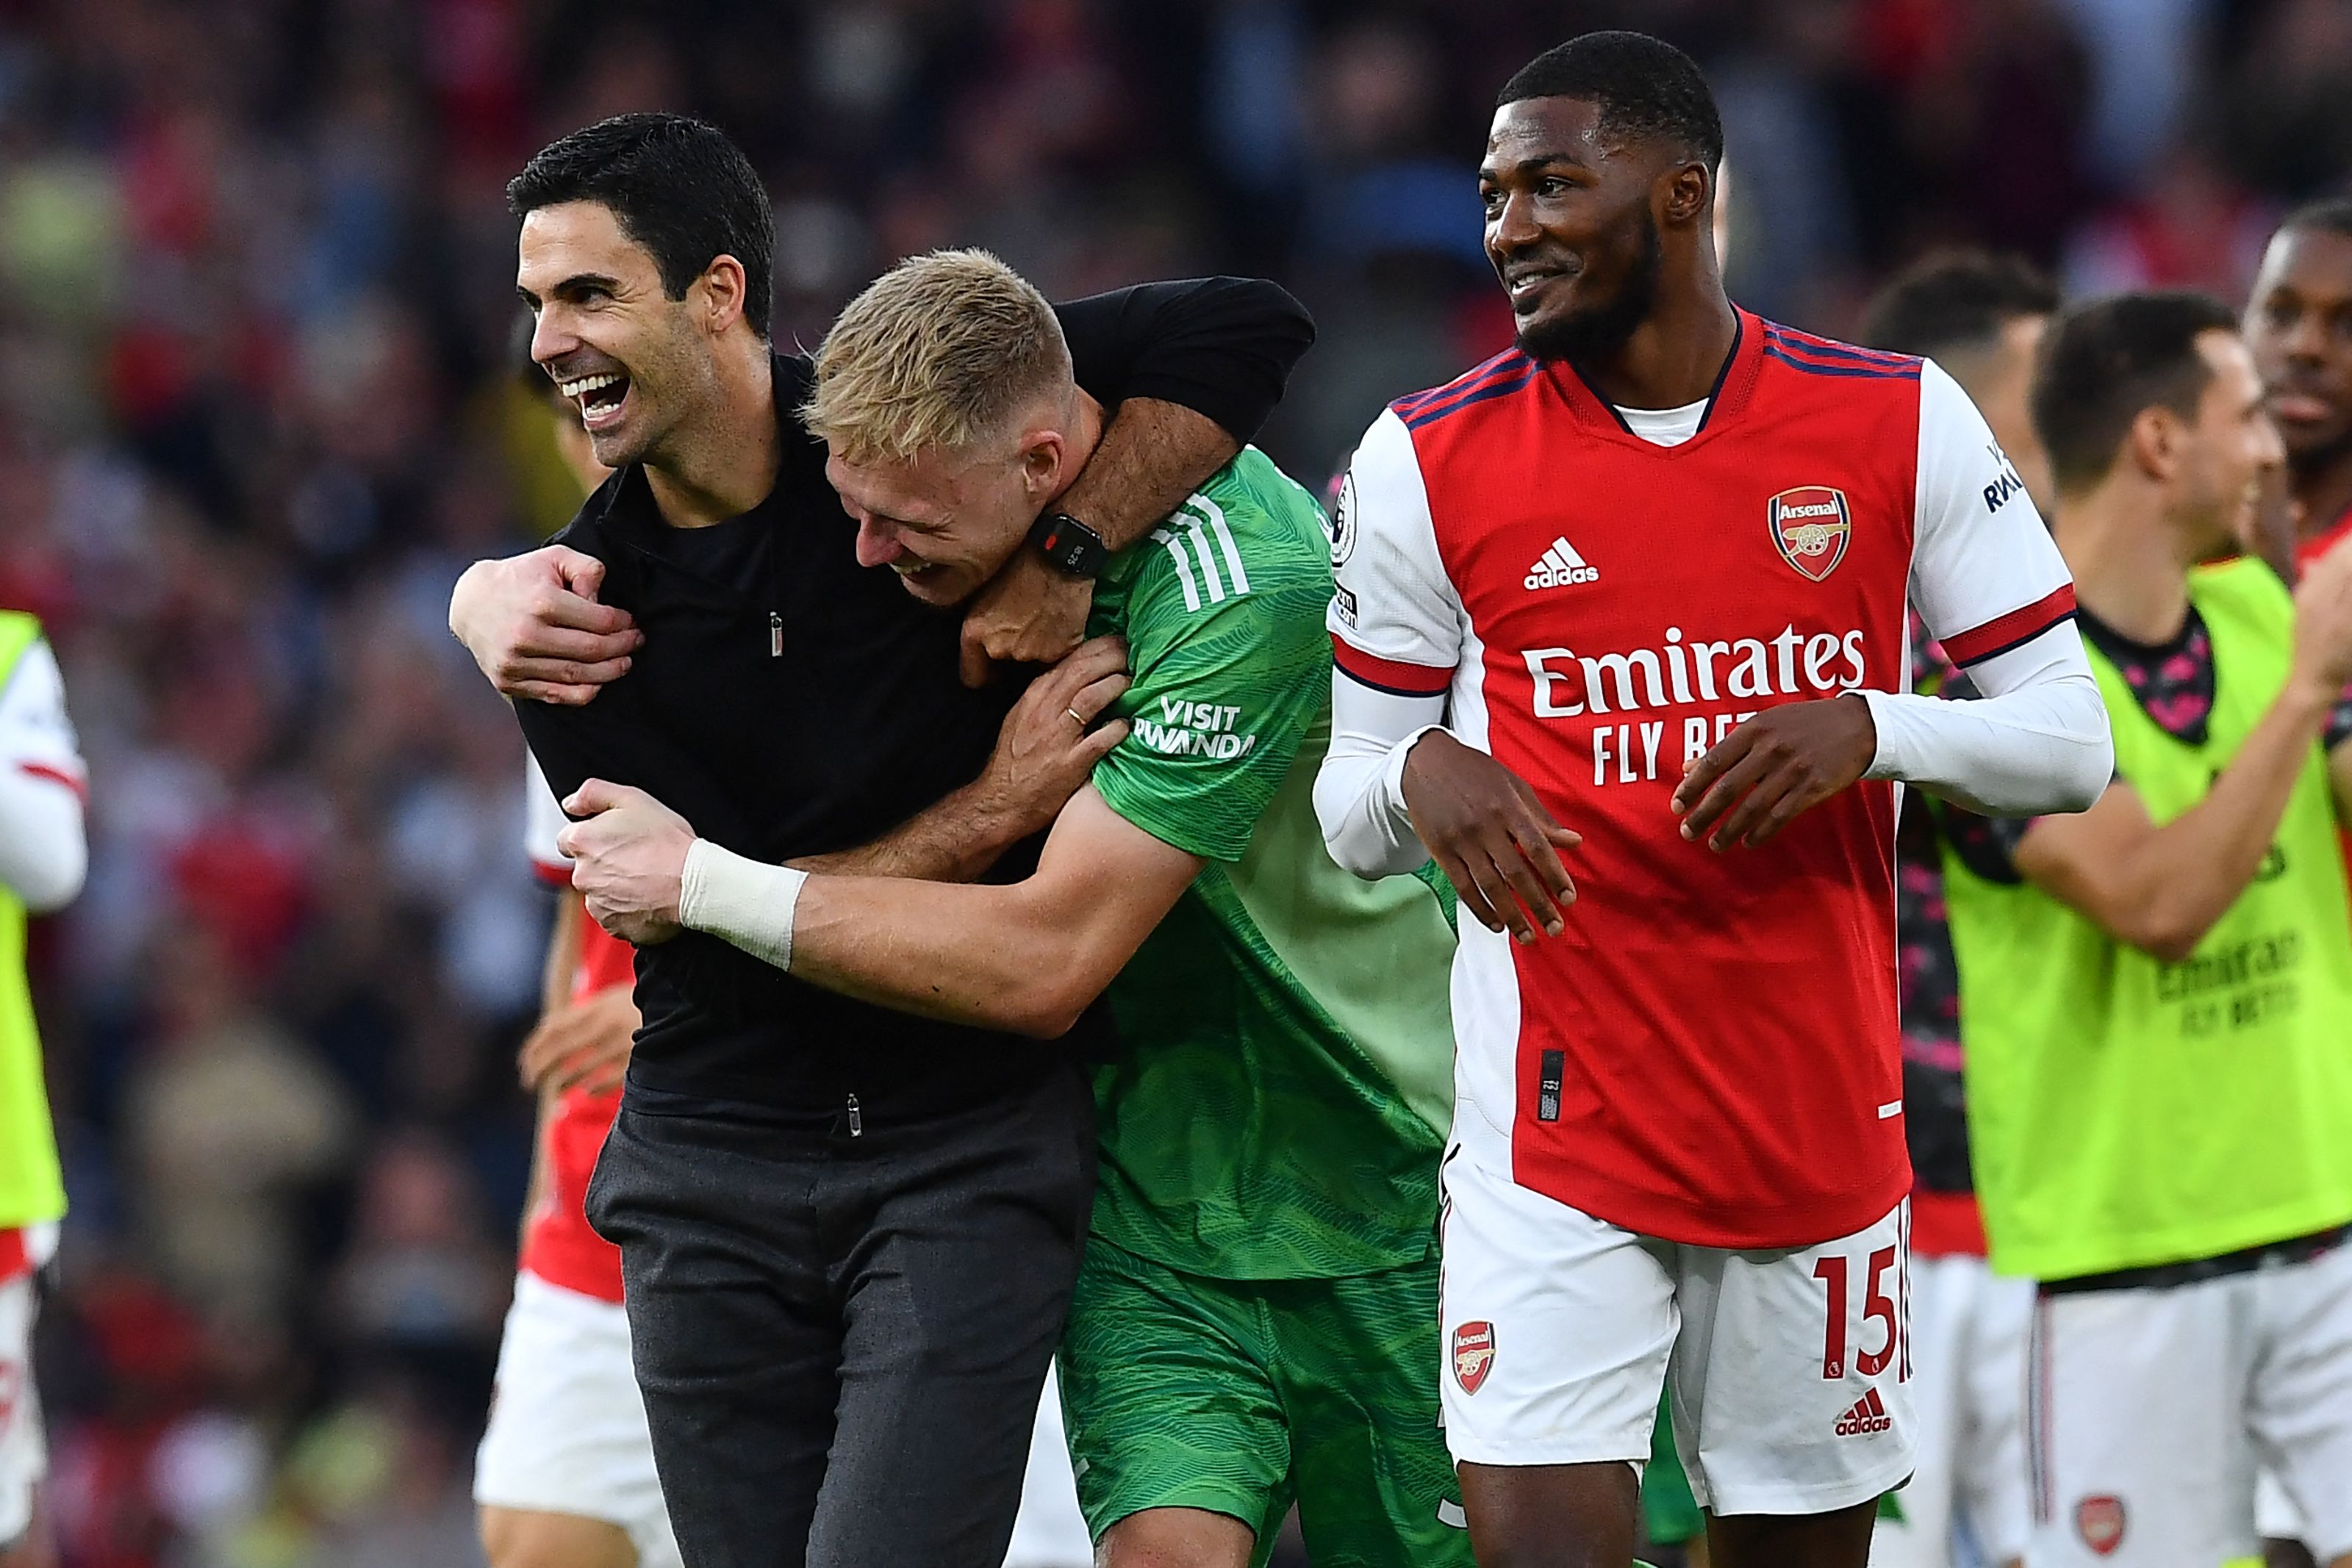 El entrenador del Arsenal, Mikel Arteta (izquierda) y su portero, Aaron Ramsdale (verde) festejan después de pegarle al Tottenham Hotspur. (Foto Prensa Libre: AFP)